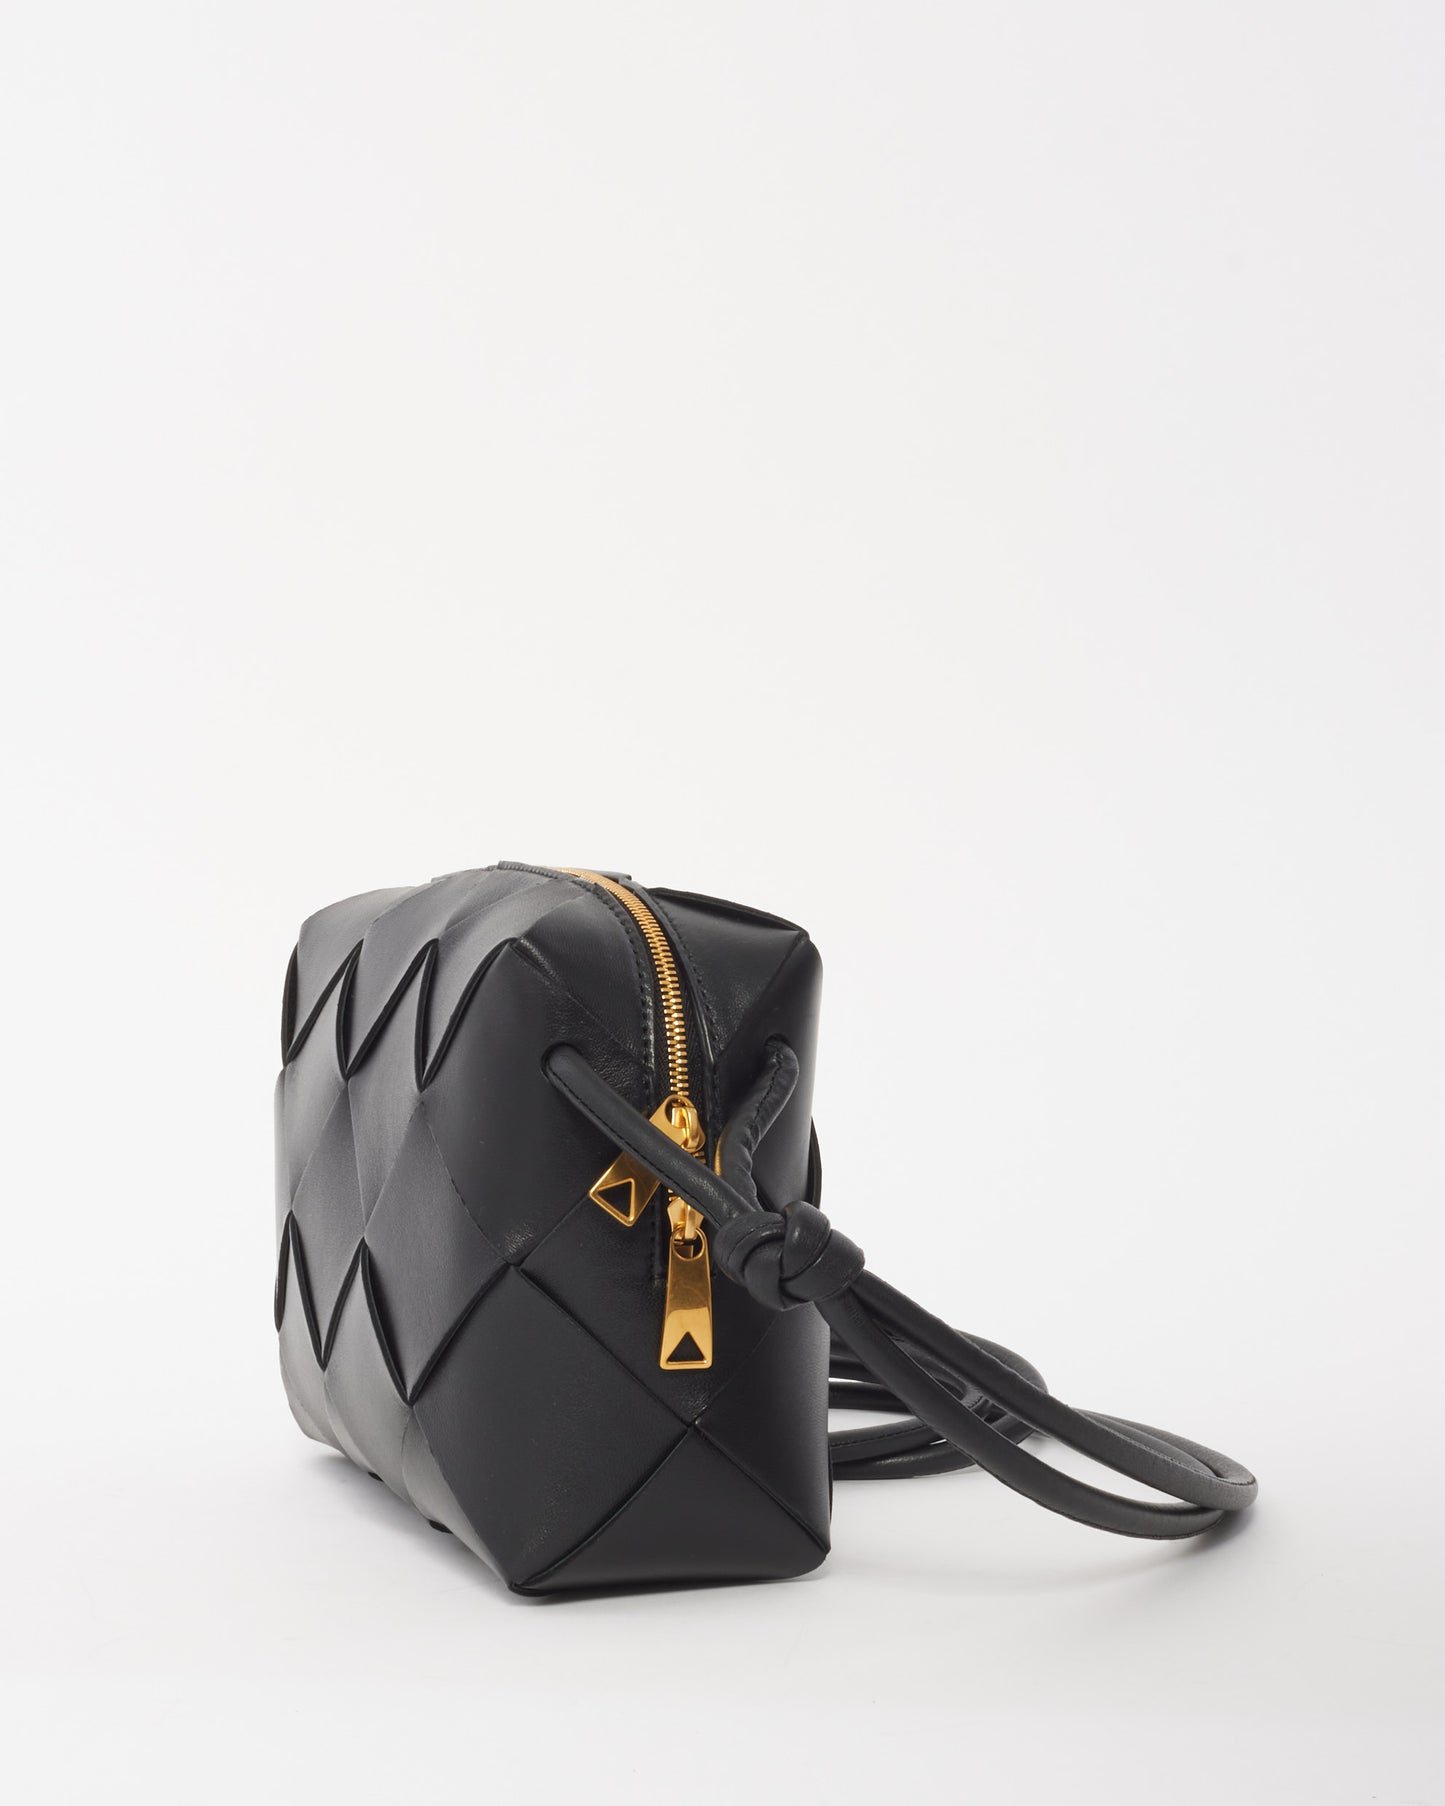 Bottega Veneta Black Intrecciato Leather Small Cassette Camera Bag